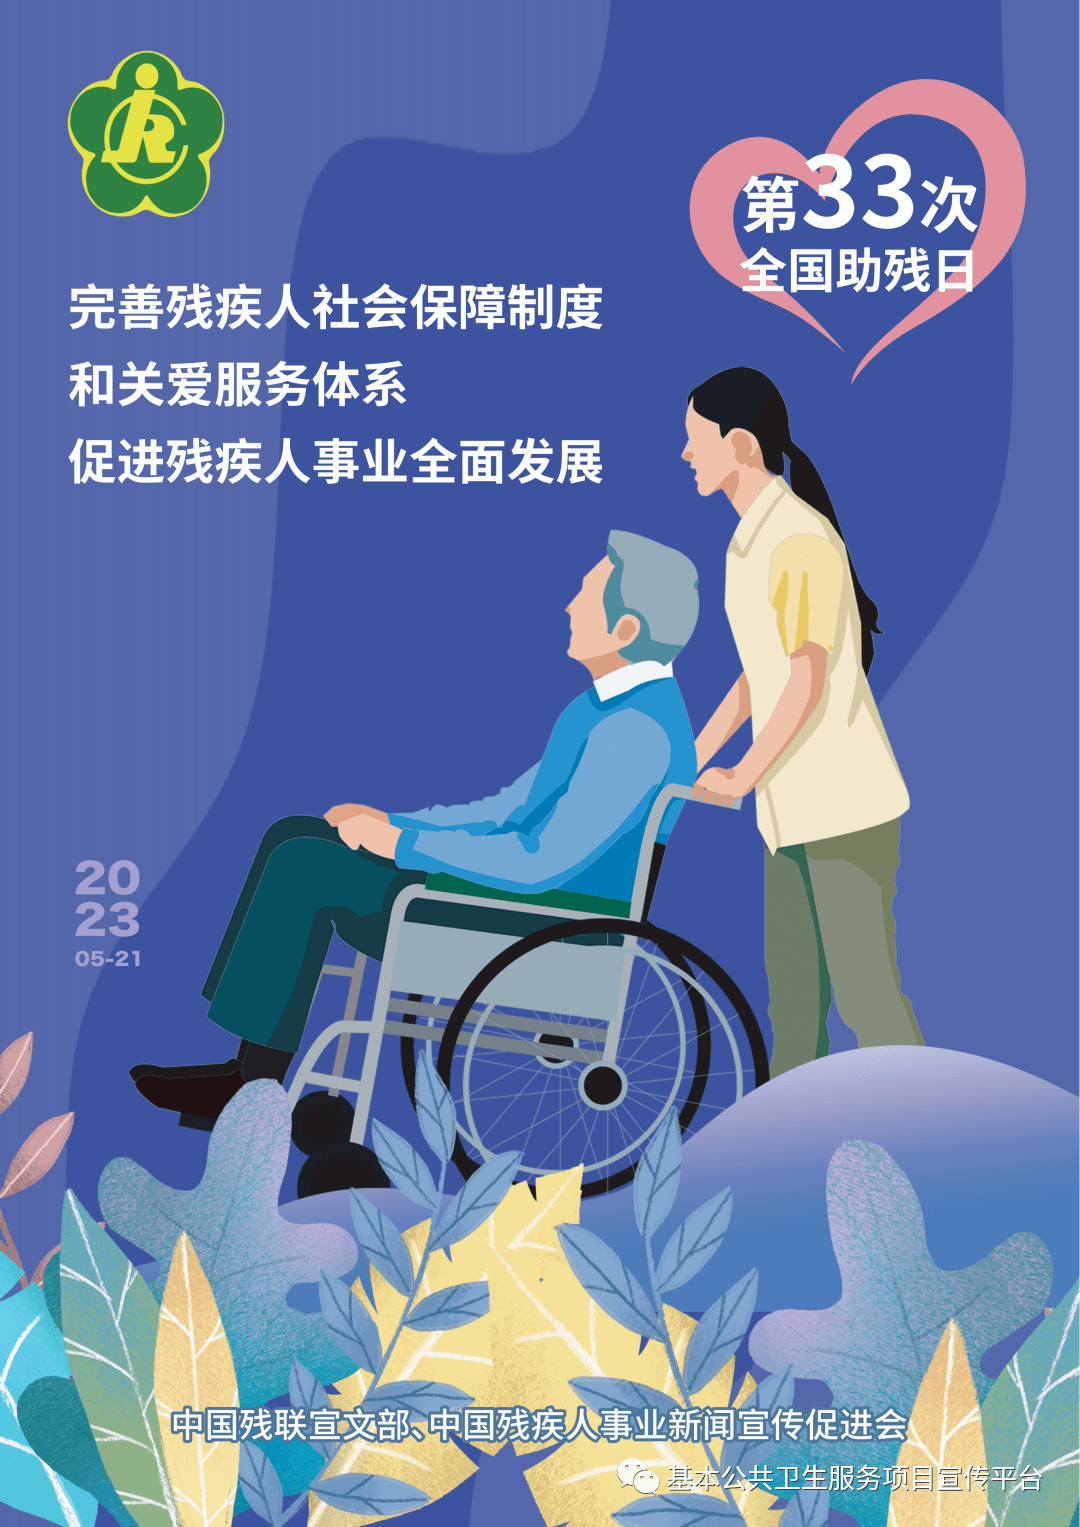 全国助残日宣传海报弘扬北京冬奥精神,发展残疾人体育事业加快发展